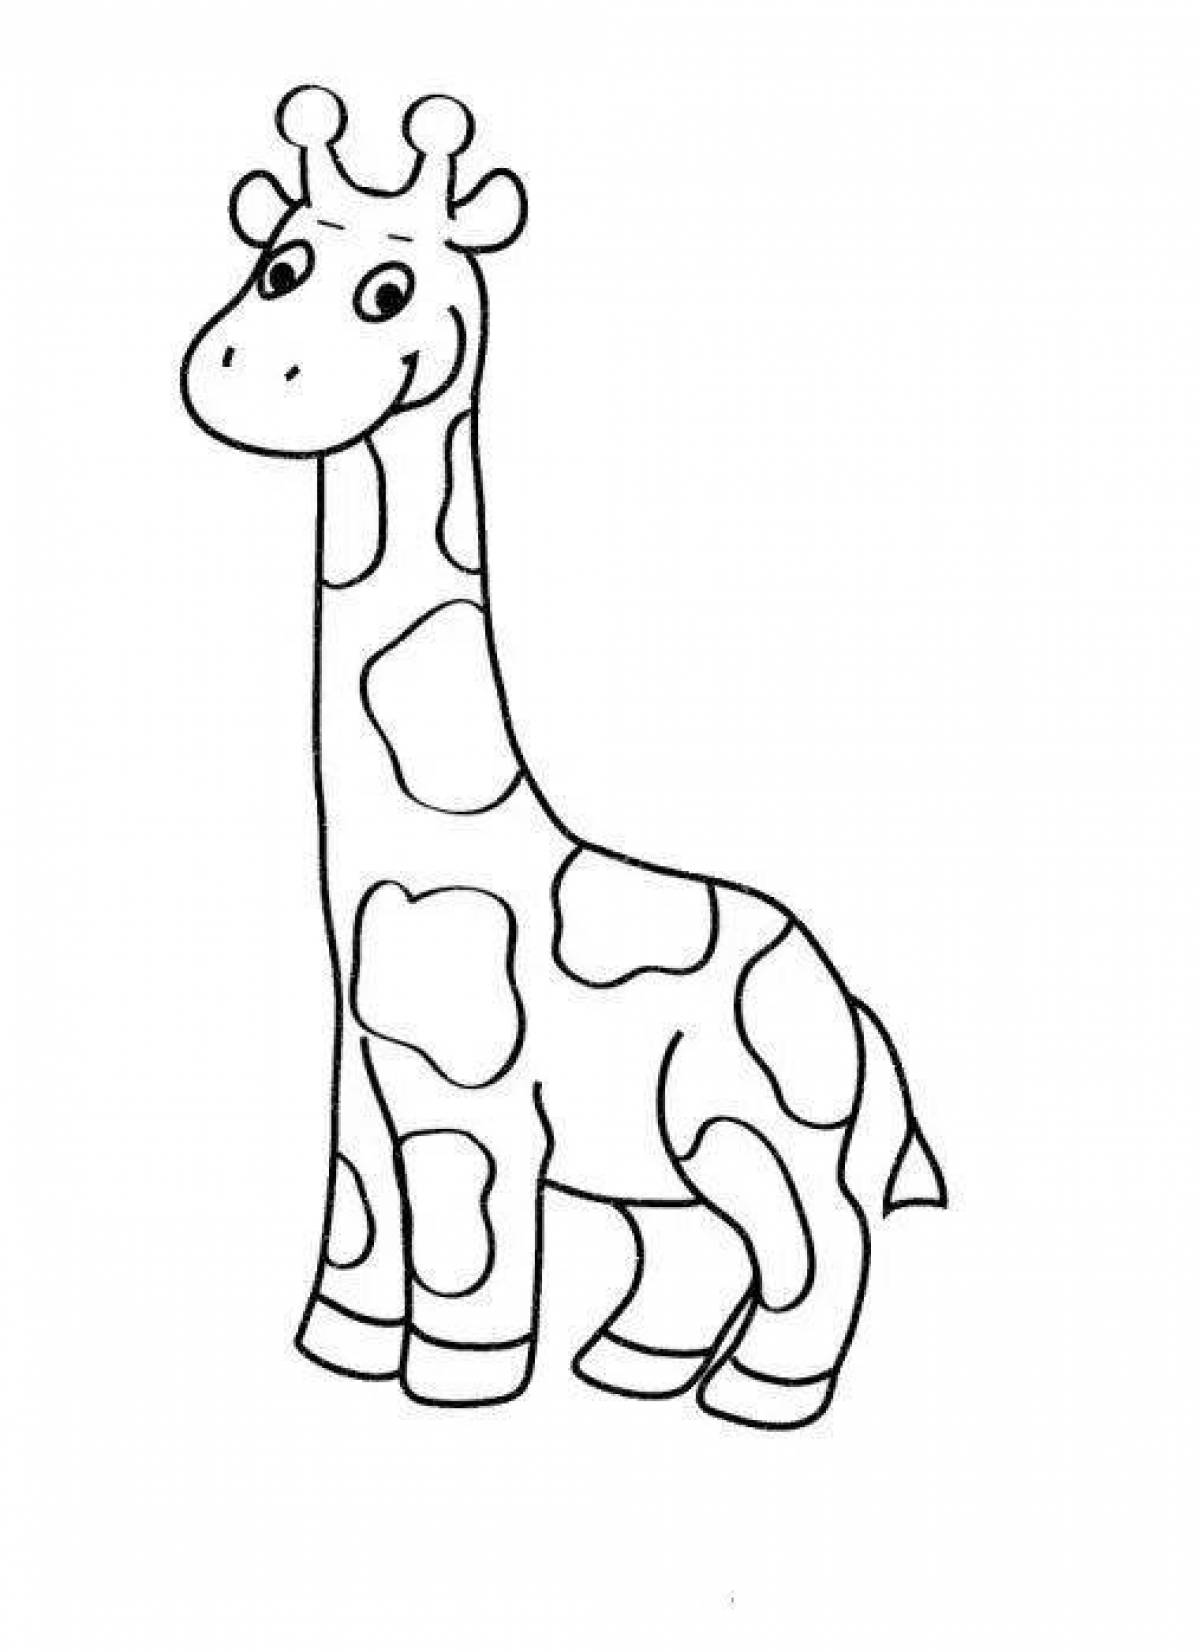 Adorable giraffe coloring book for kids